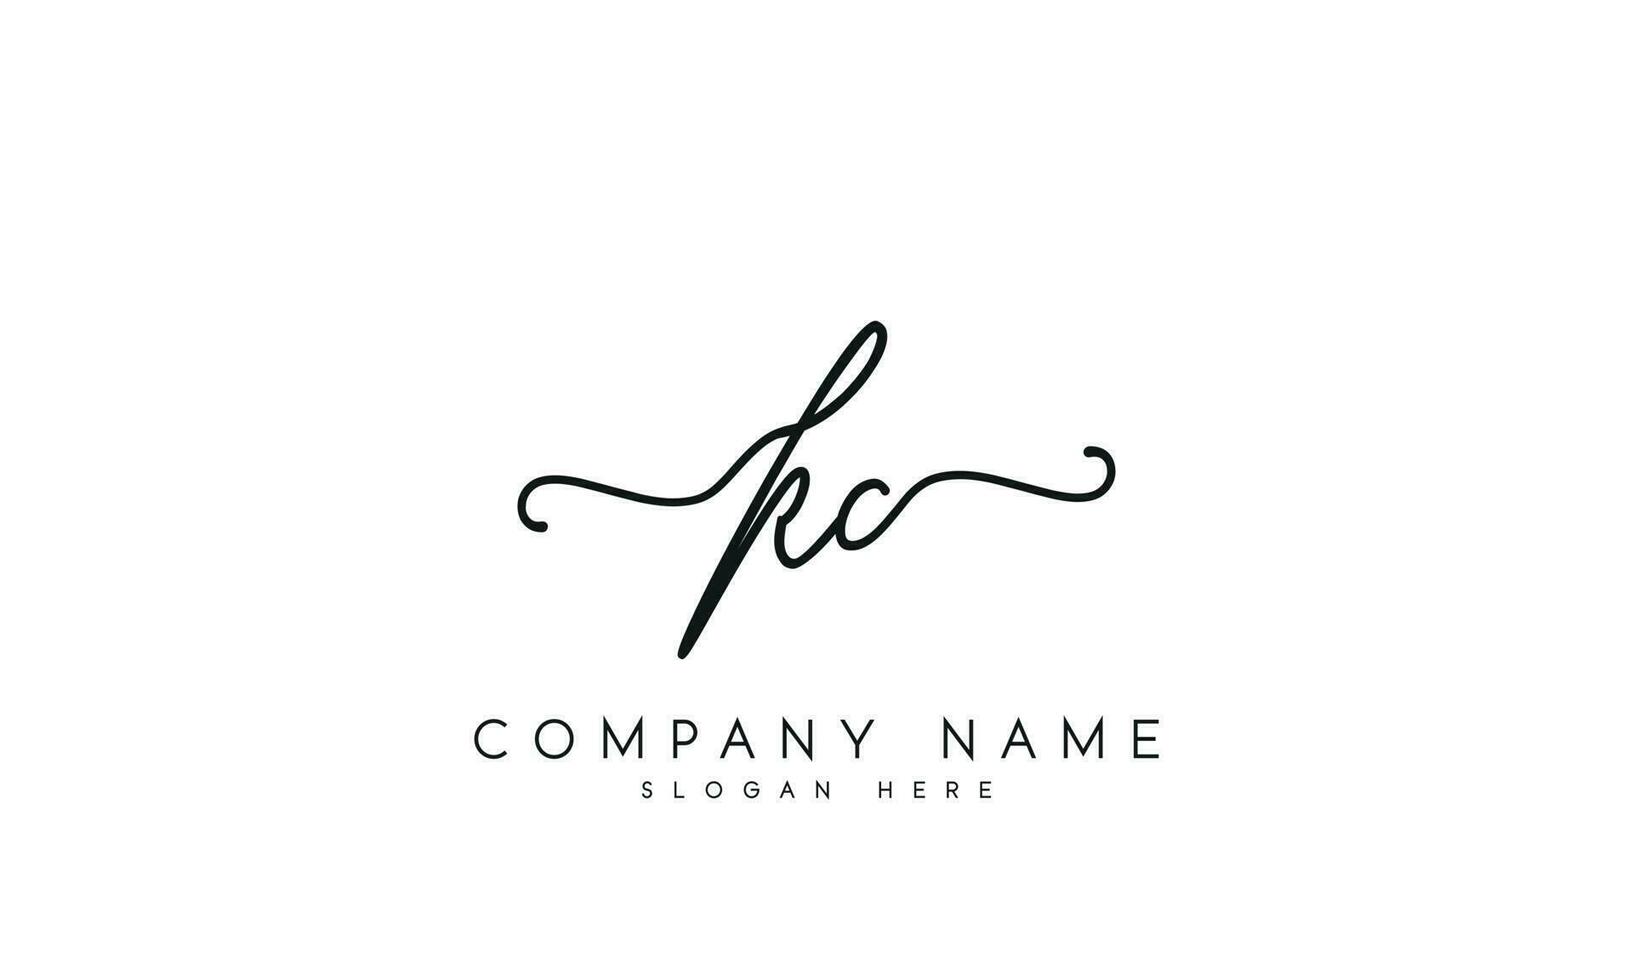 écriture kc logo conception. kc logo conception vecteur illustration sur blanc Contexte. gratuit vecteur